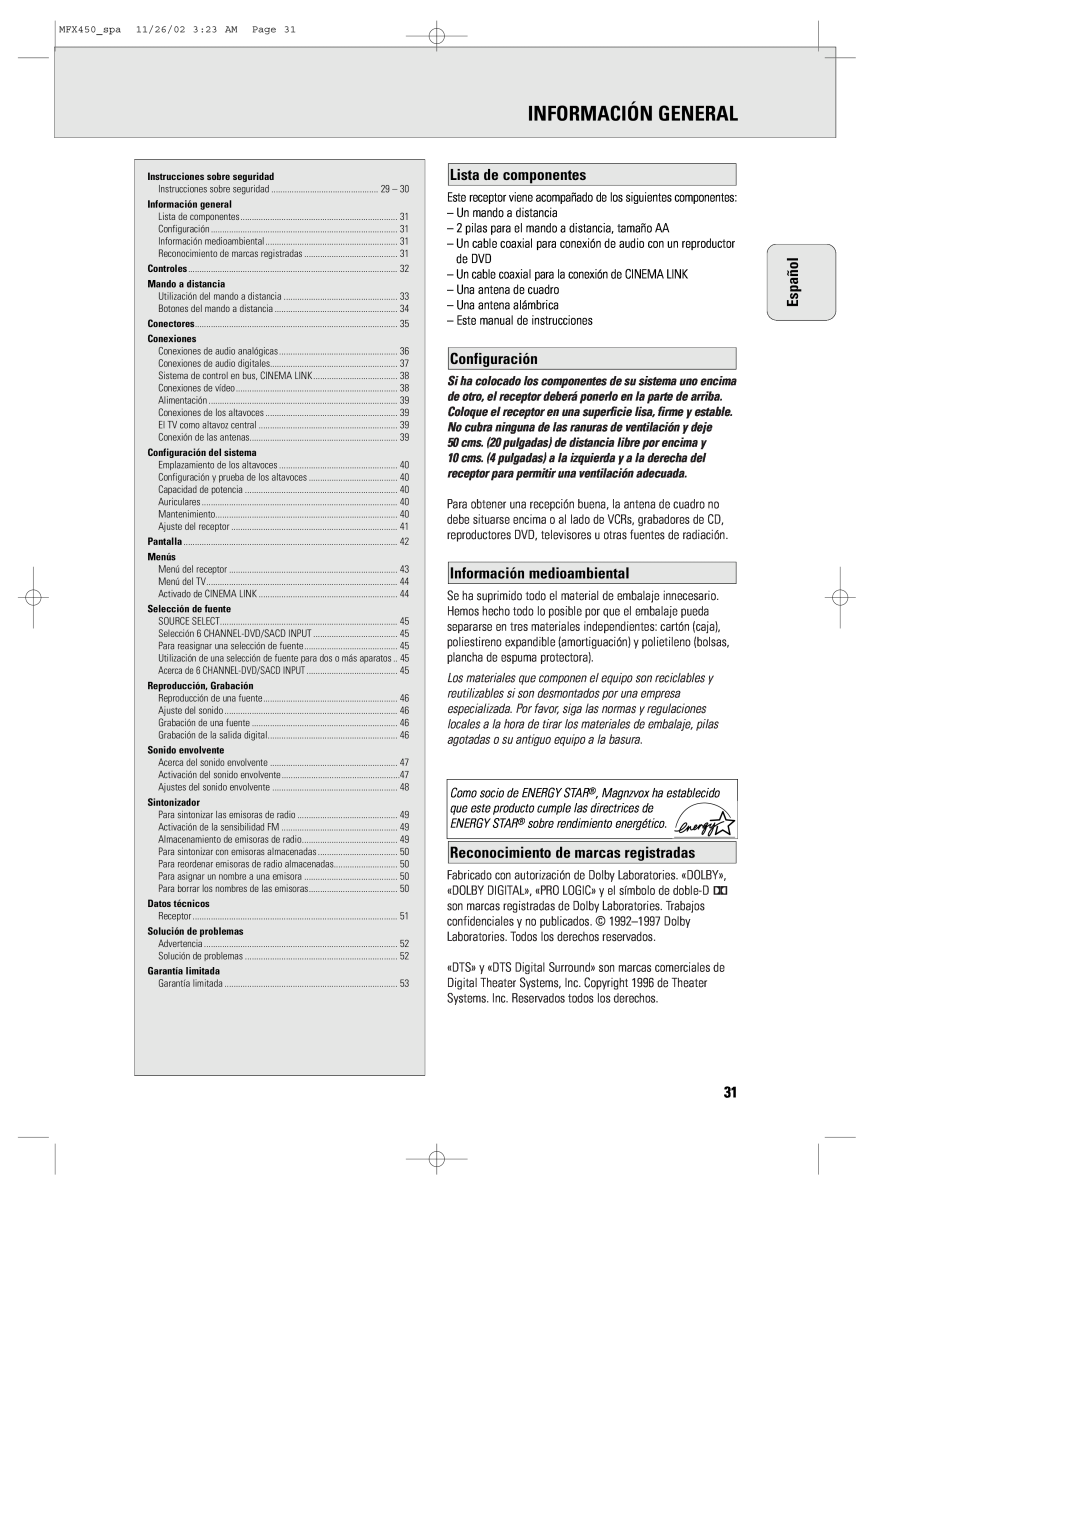 Magnavox MMX450/17 manual Información General, Lista de componentes, Configuración, Información medioambiental, Español 